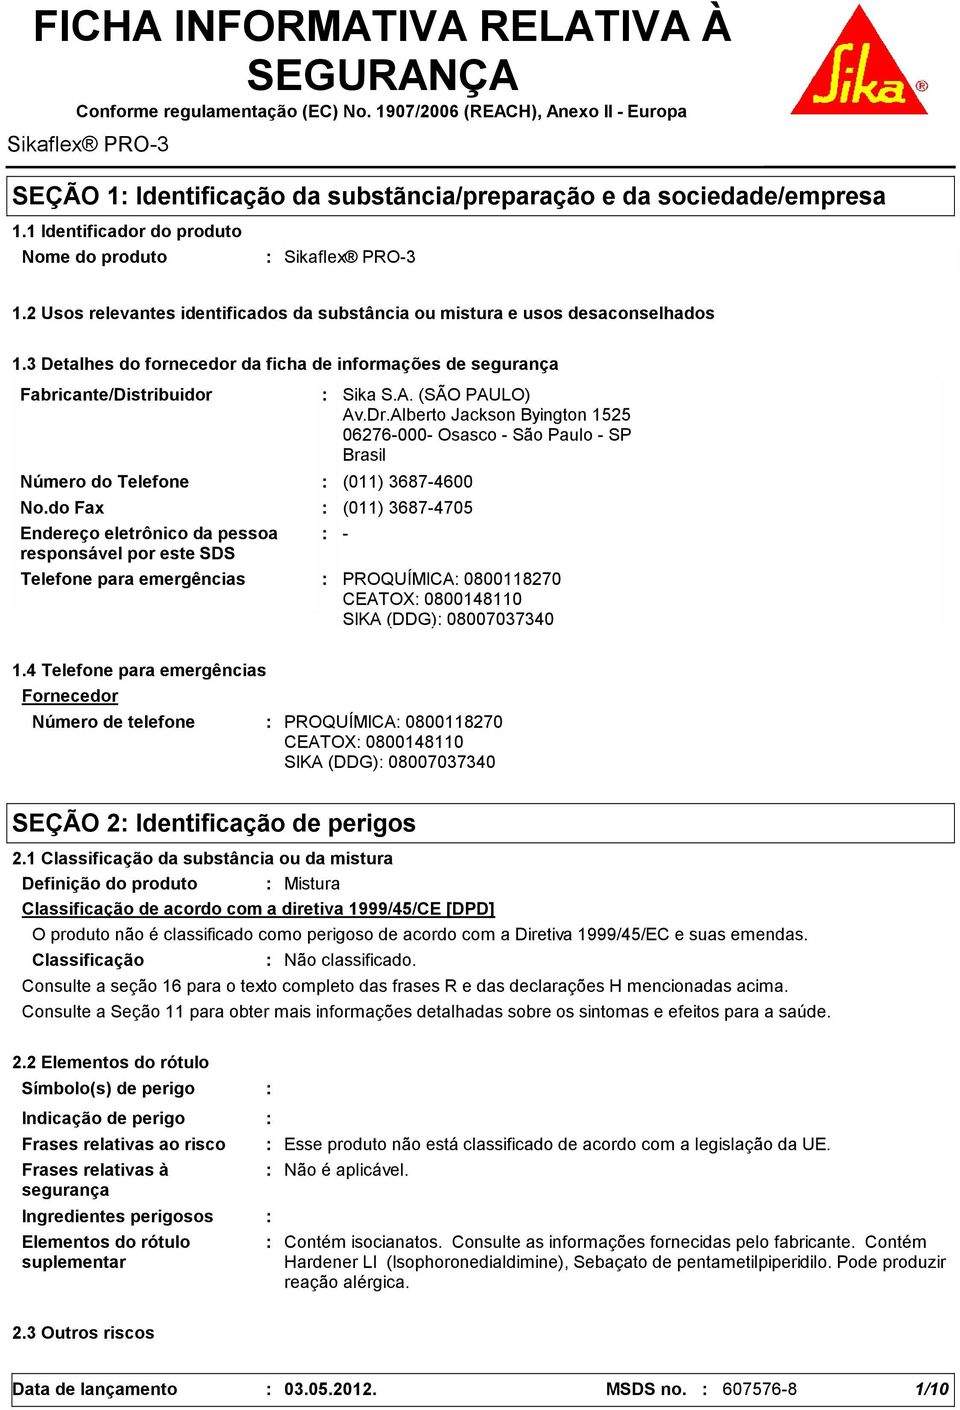 3 Detalhes do fornecedor da ficha de informações de segurança Fabricante/Distribuidor Número do Telefone Telefone para emergências Sika S.A. (SÃO PAULO) Av.Dr.